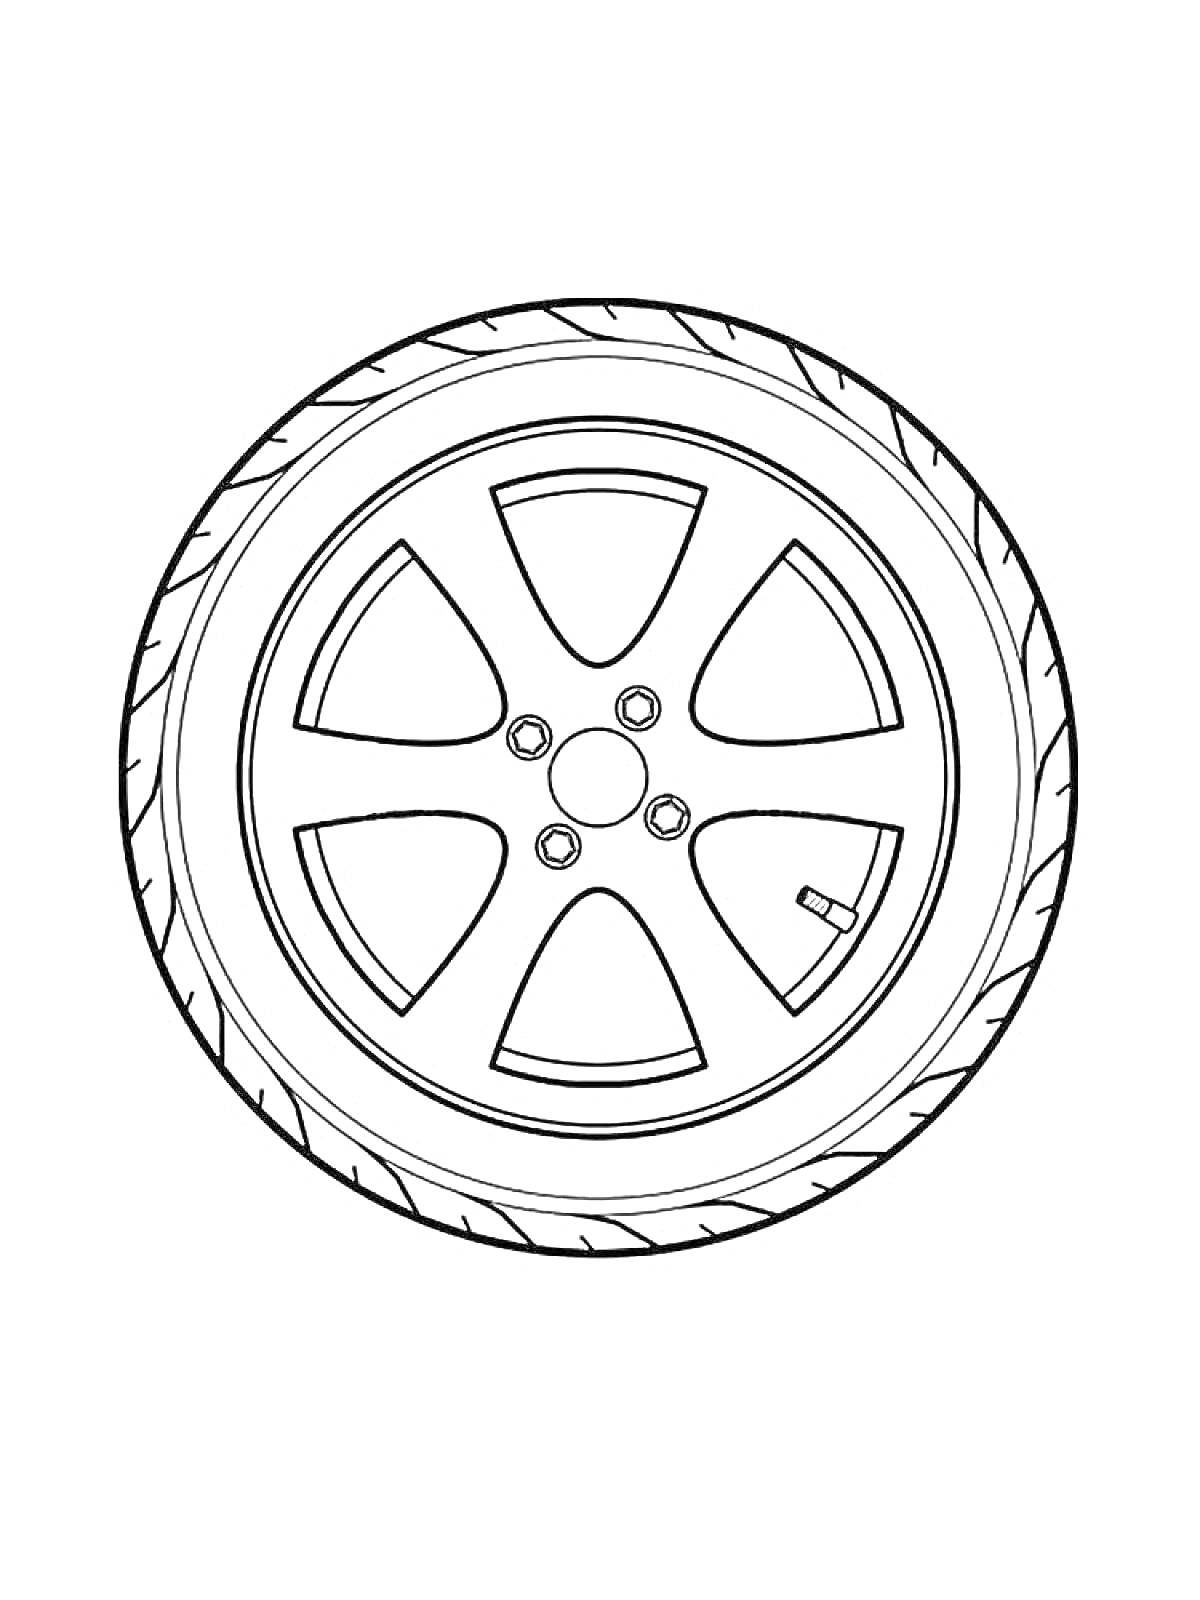 Раскраска Автомобильное колесо с пятью спицами и вентилем